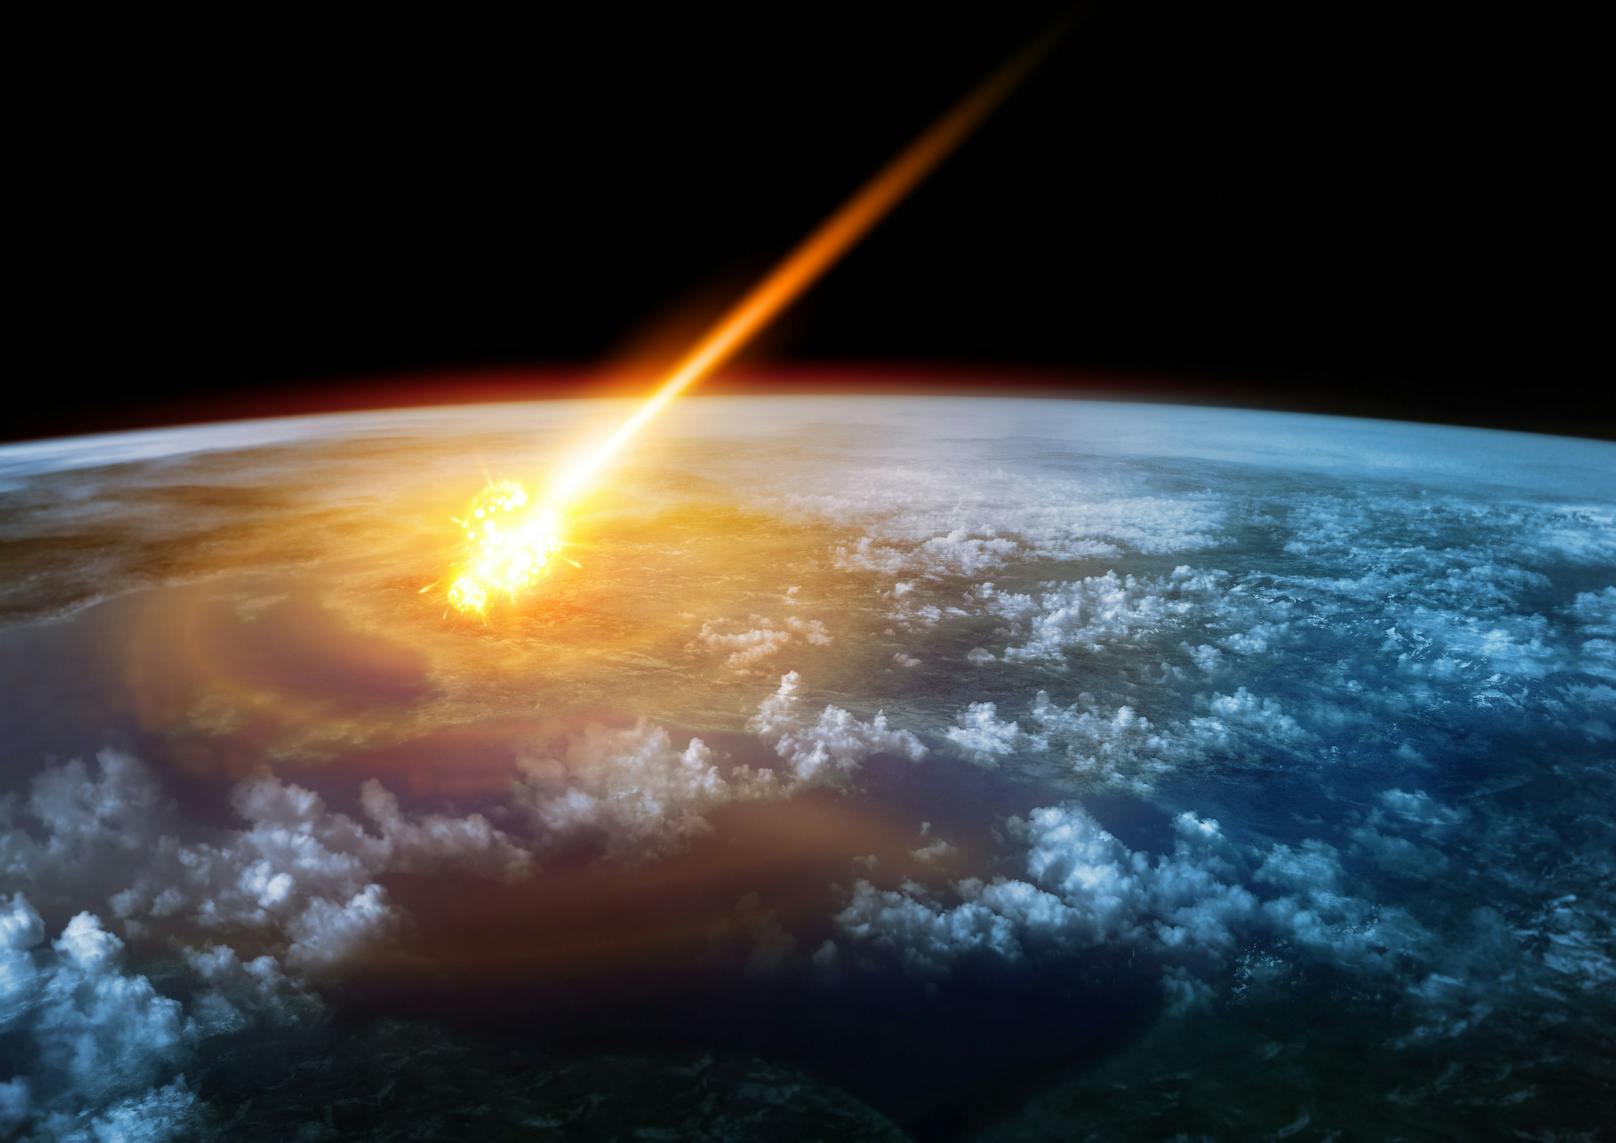 Der Asteroid könnte die Erde treffen – so klar ist das allerdings noch nicht. Symbolbild.